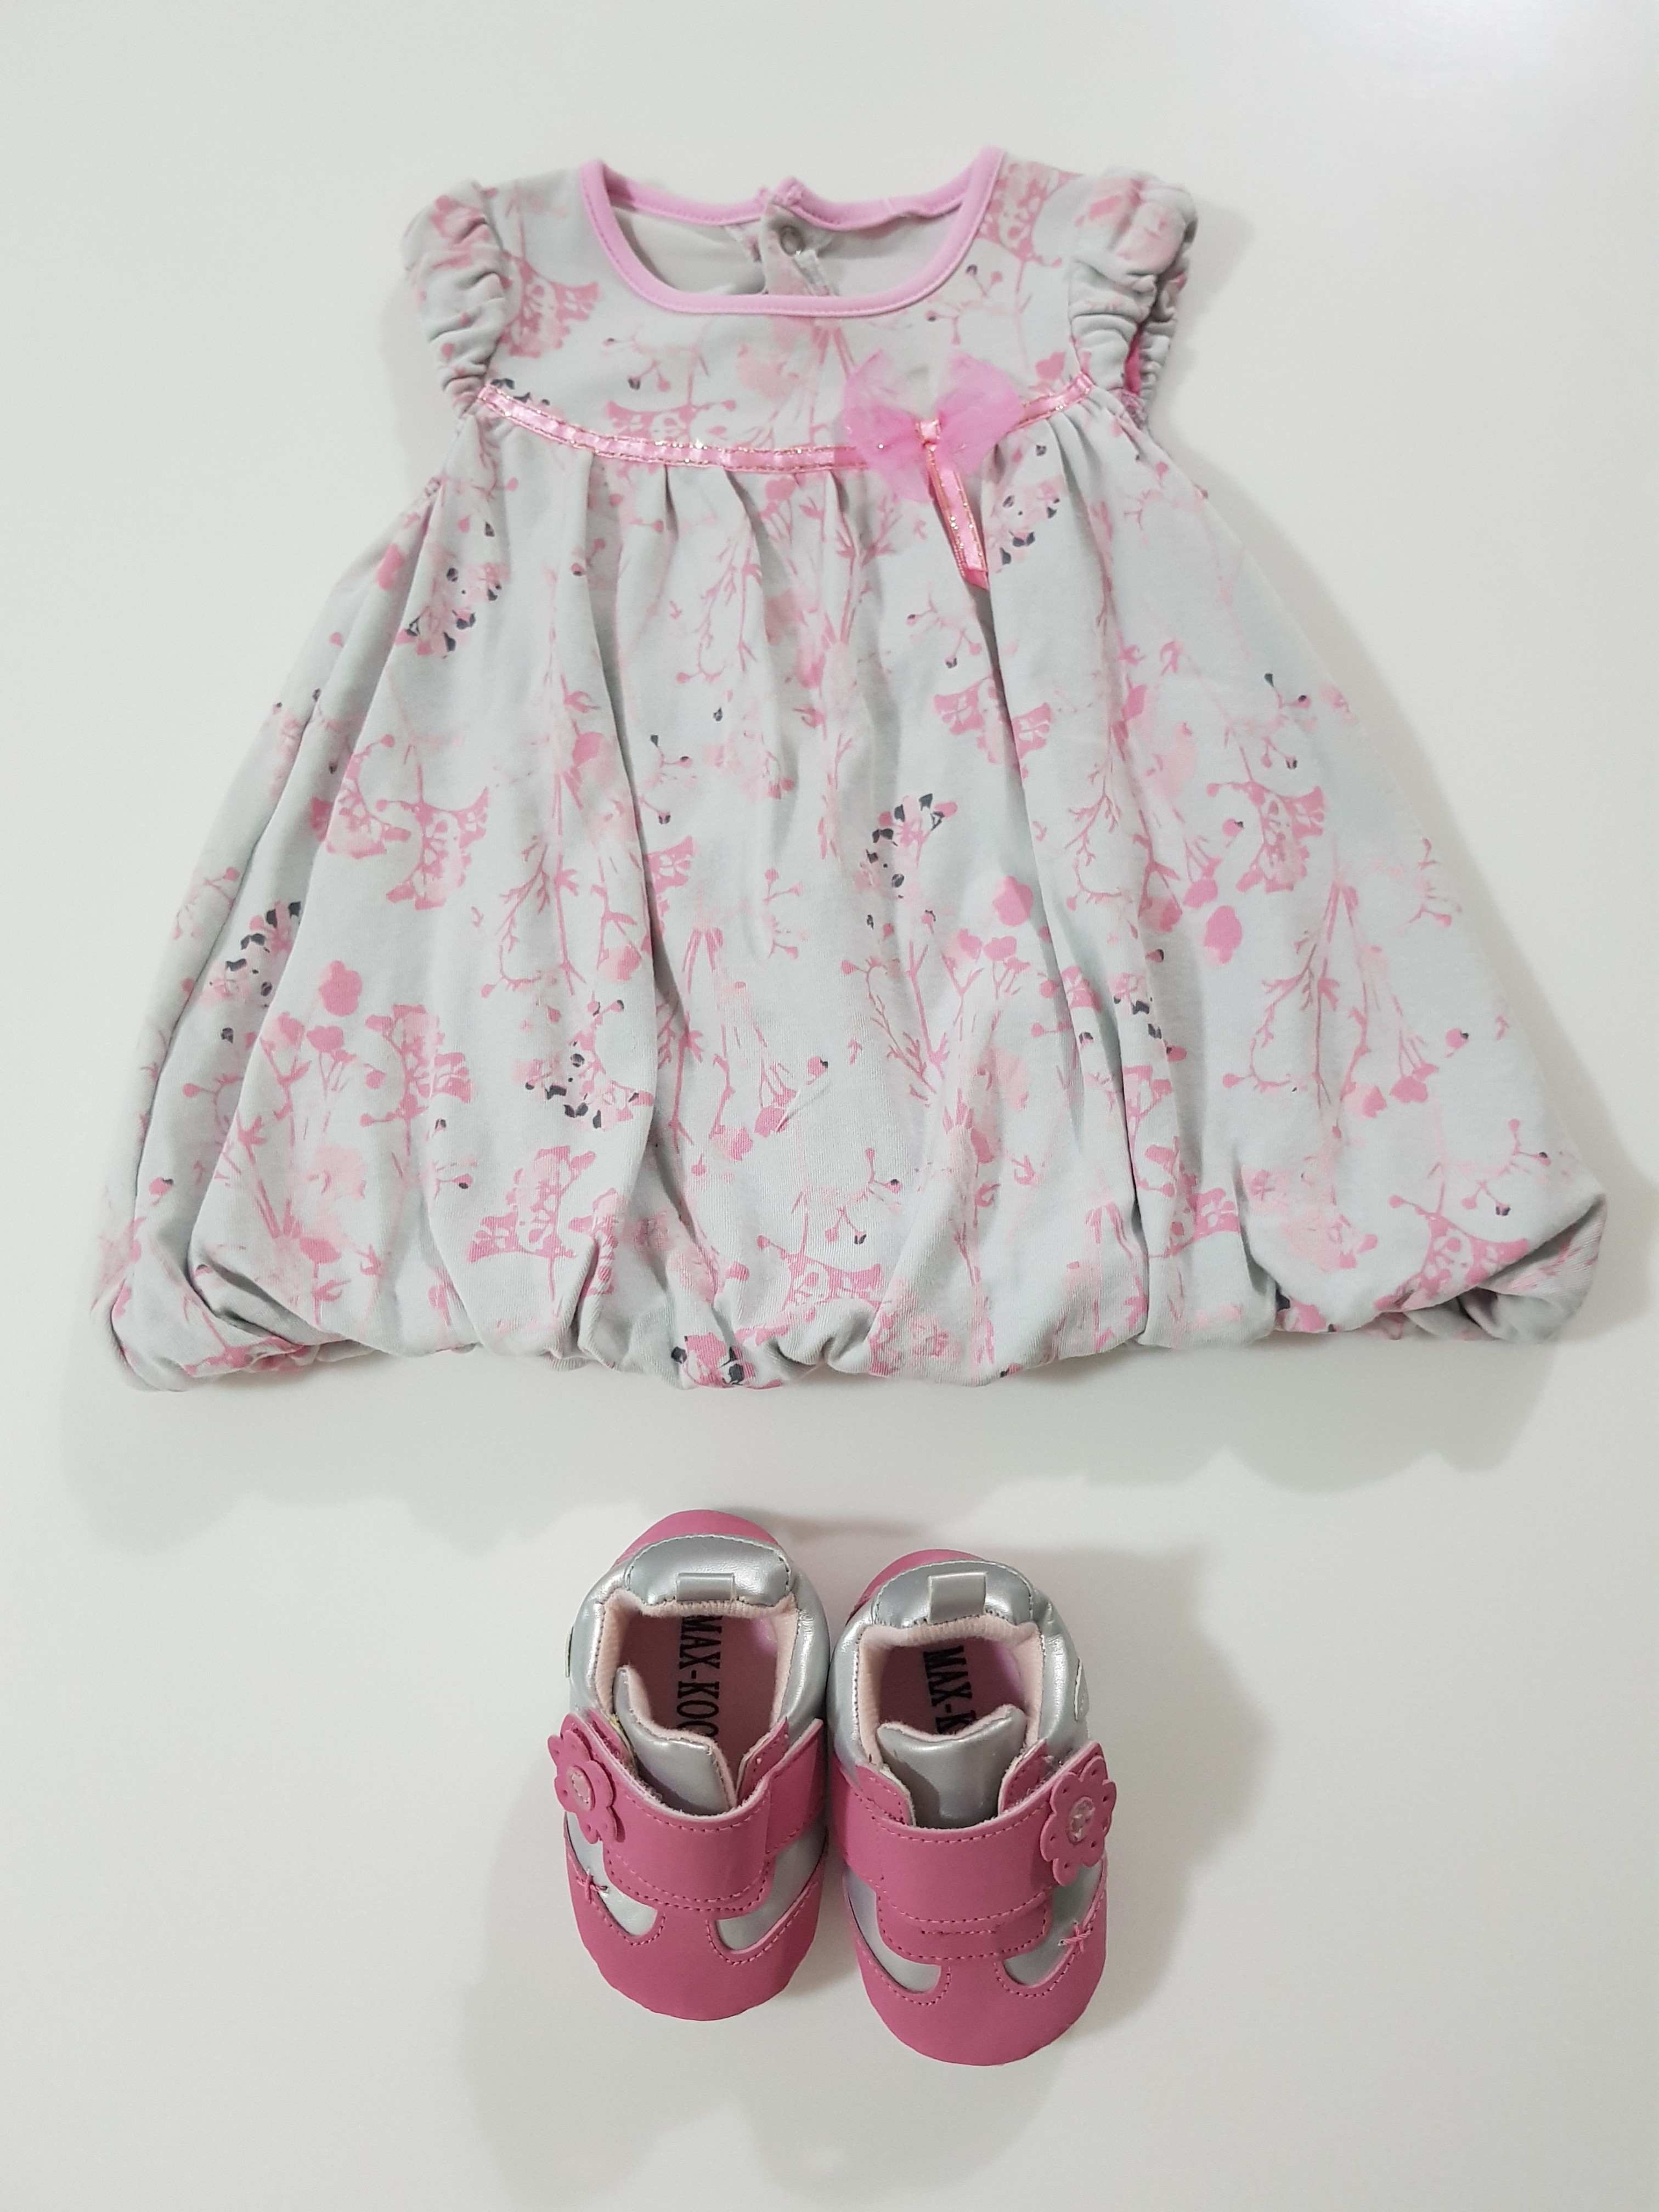 Dress and shoes set, Babies \u0026 Kids 